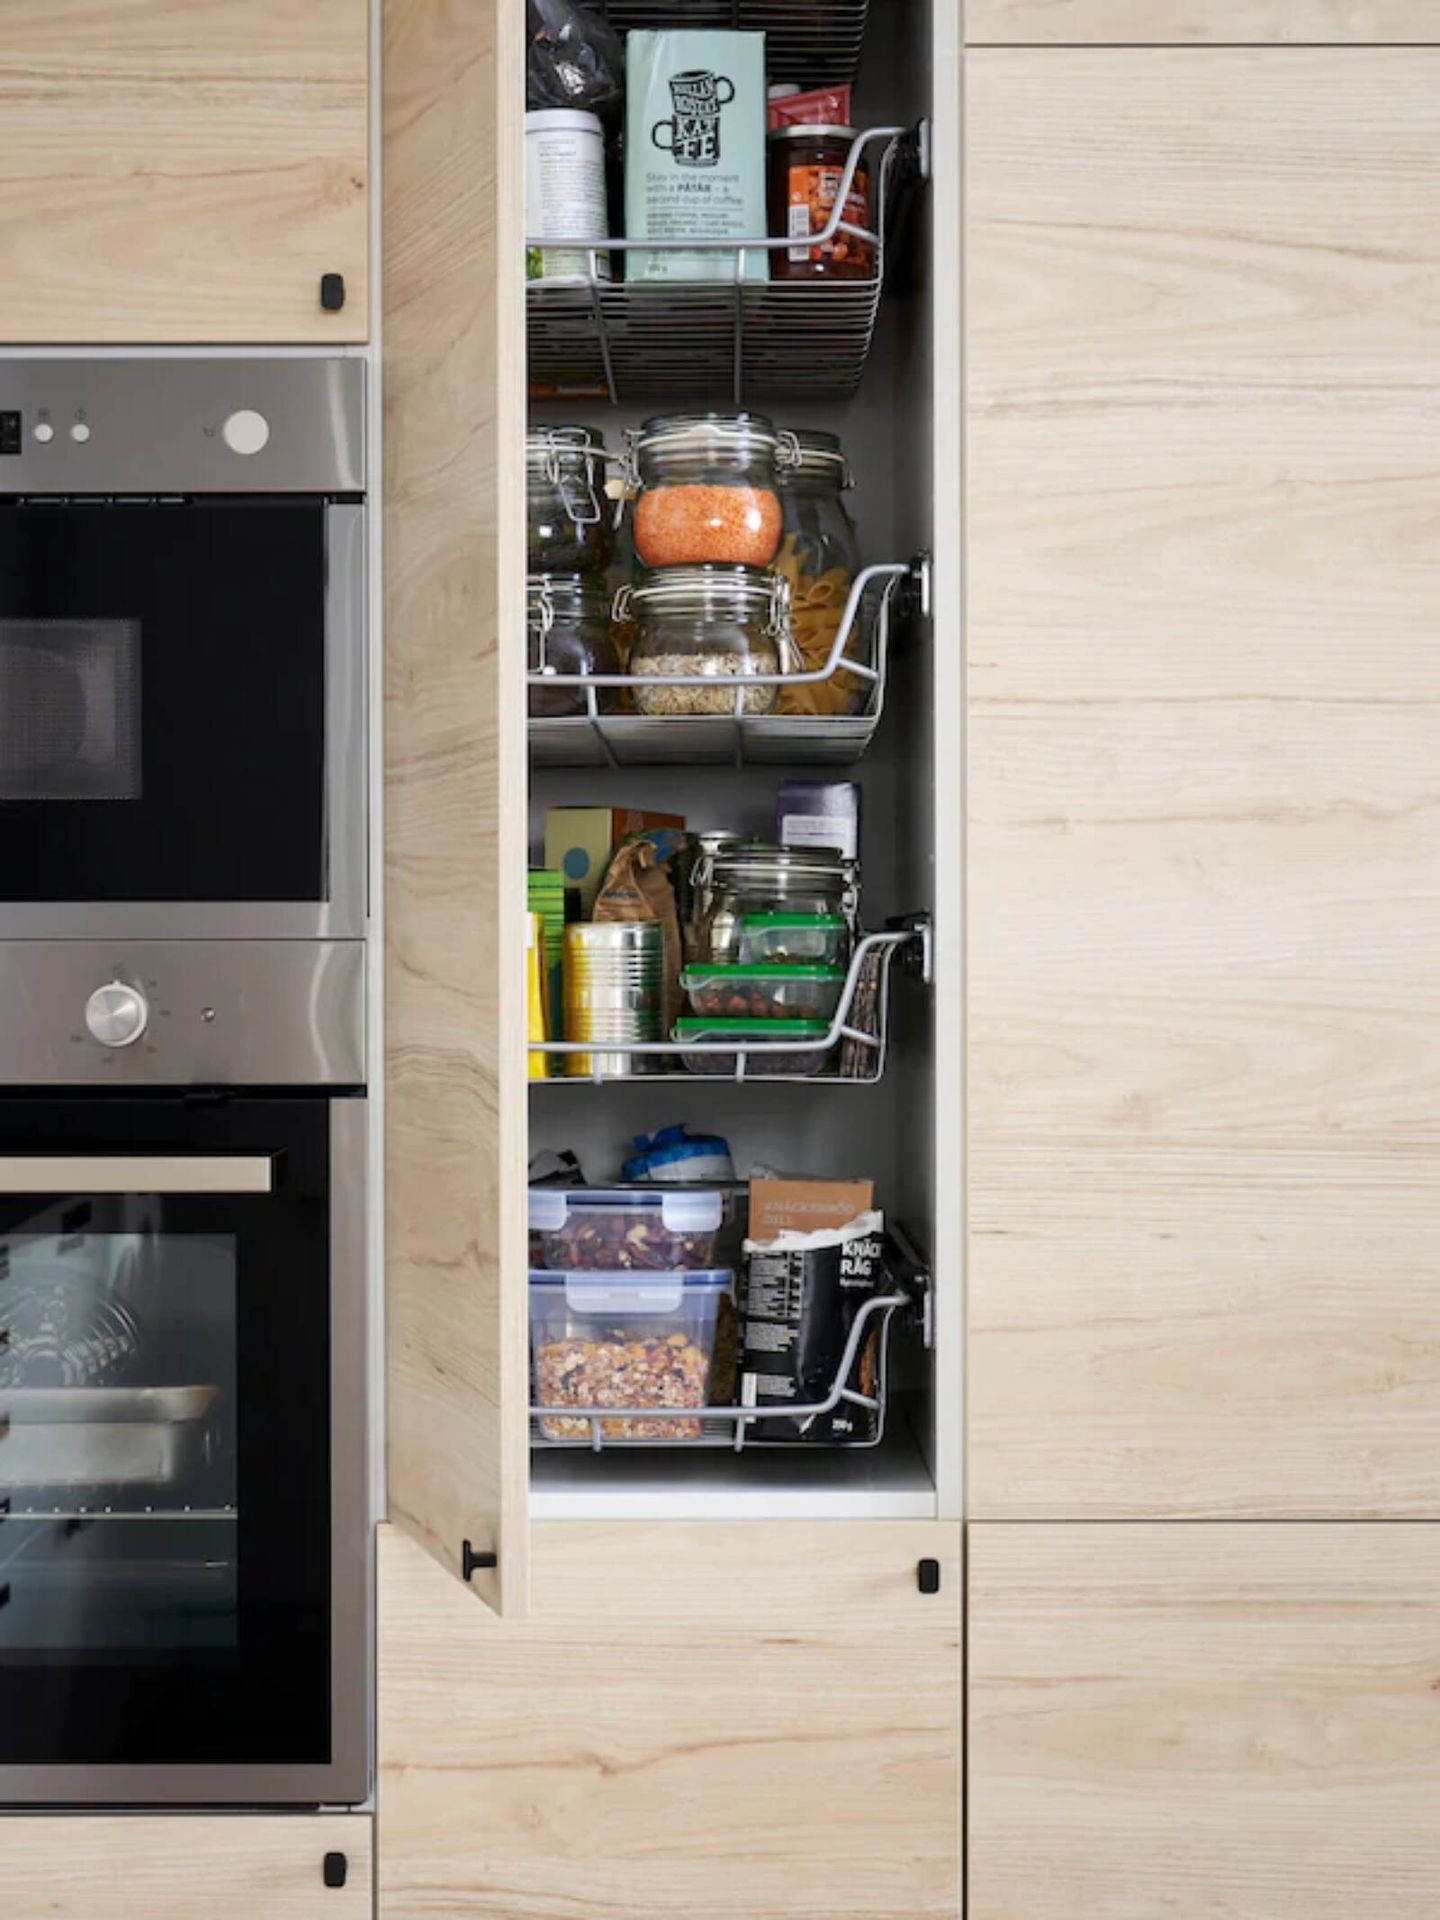 Ideas de Ikea para cocinas ordenadas. (Cortesía)